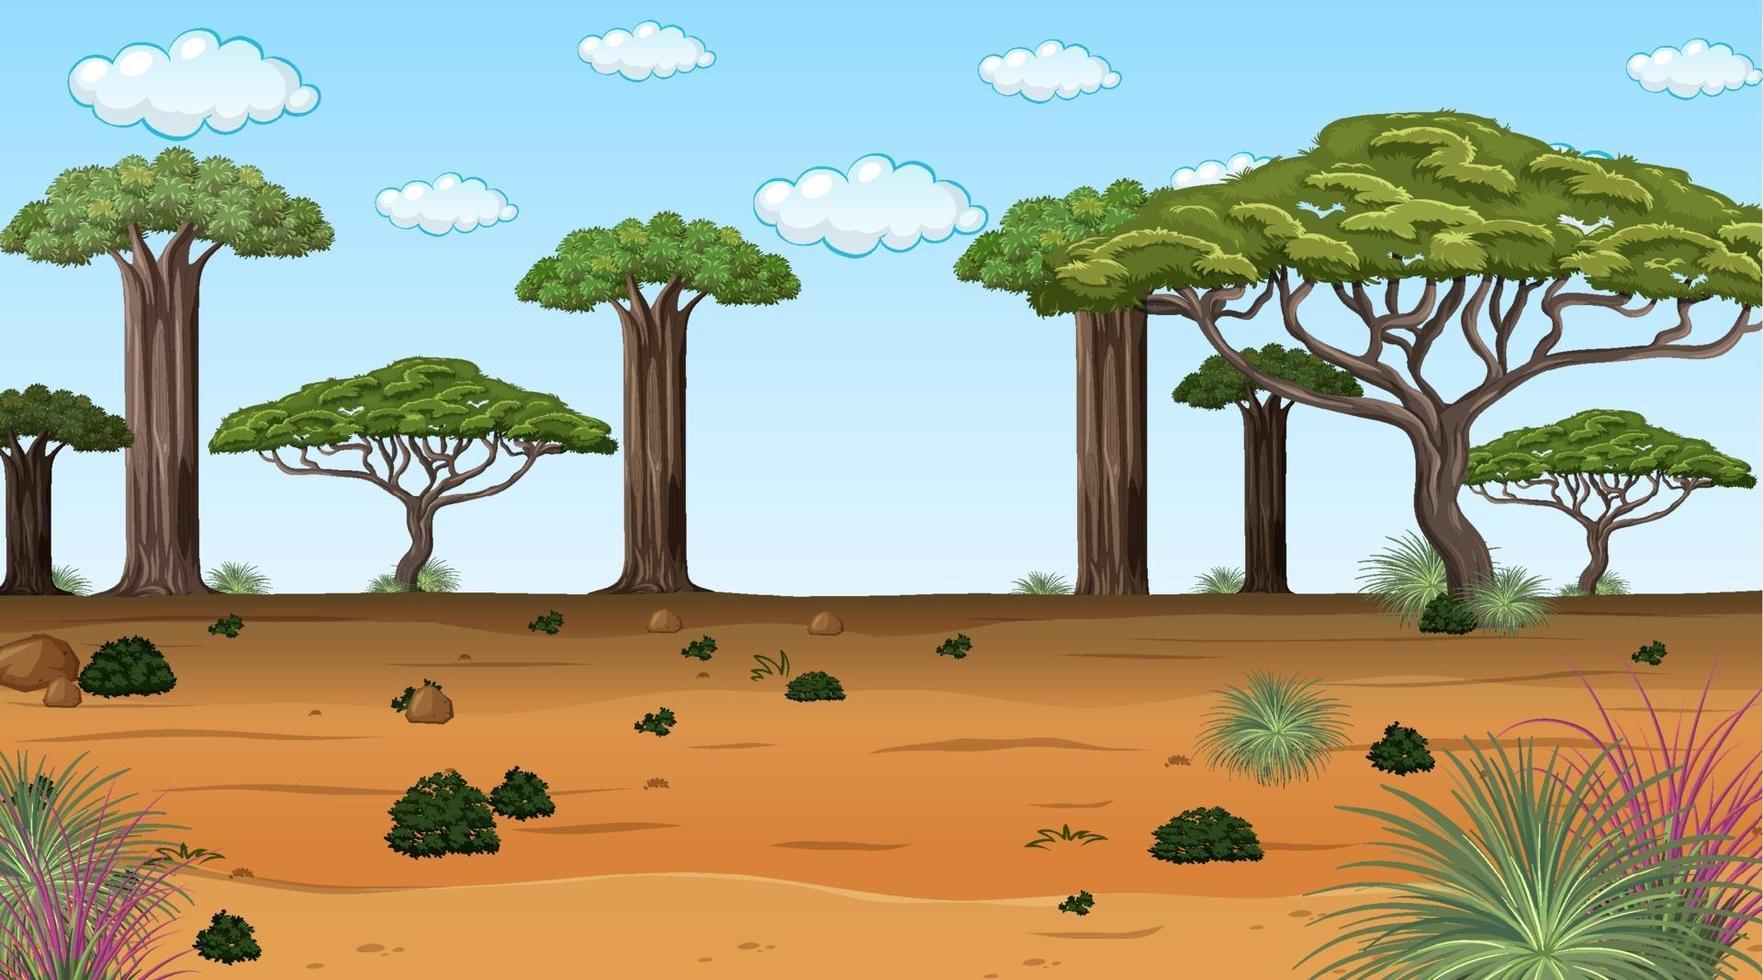 paisaje de bosque africano en la escena diurna con muchos árboles grandes vector